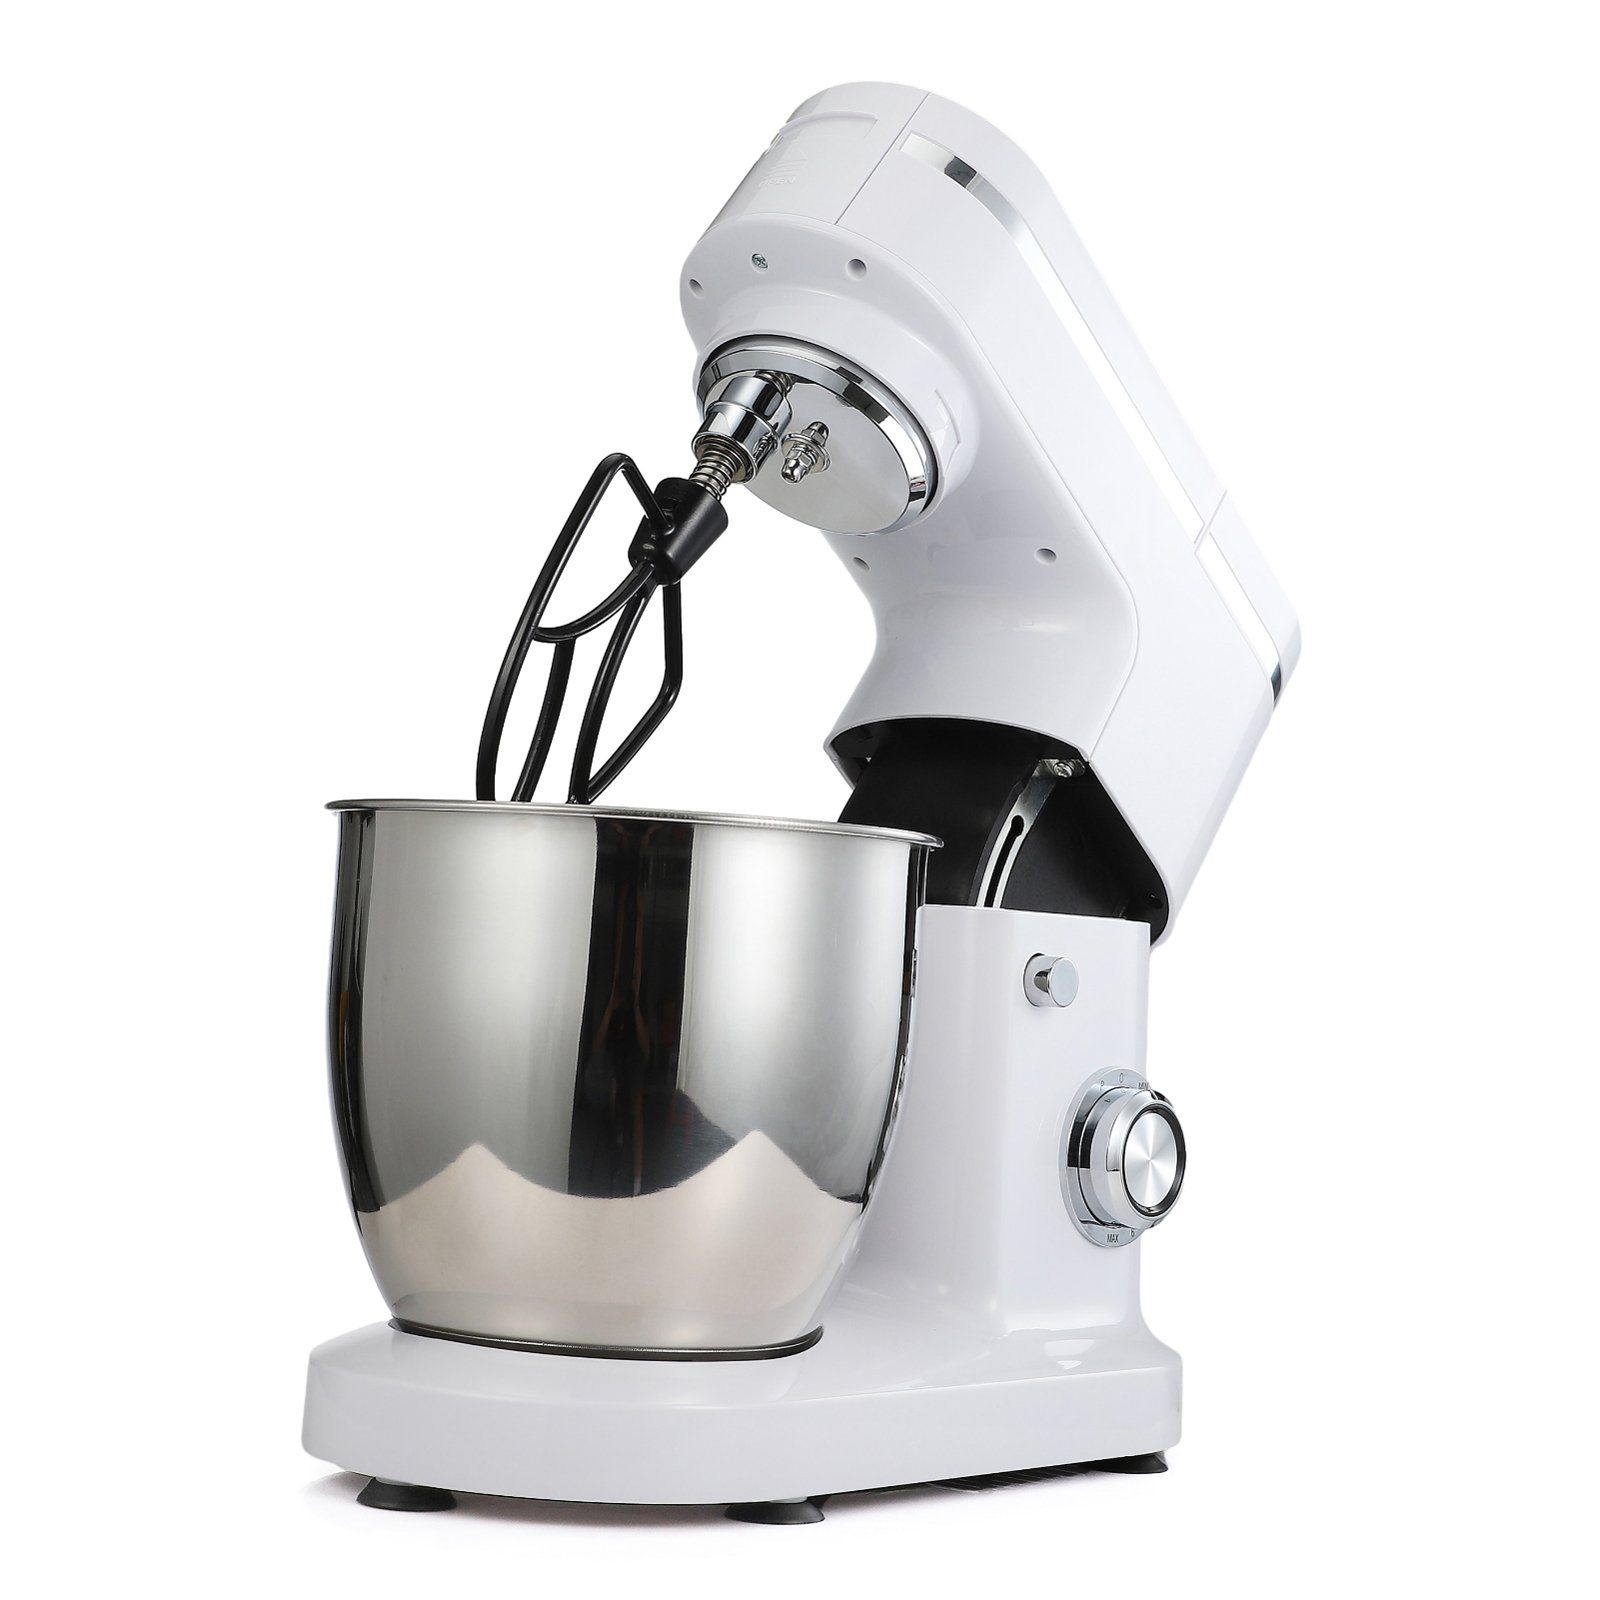 SEEZSSA Küchenmaschine mit Kochfunktion Kocher LW6912G1 Kunststoff Leistung 1200W, Grundausstattung Grundlegende Konfiguration | Küchenmaschinen